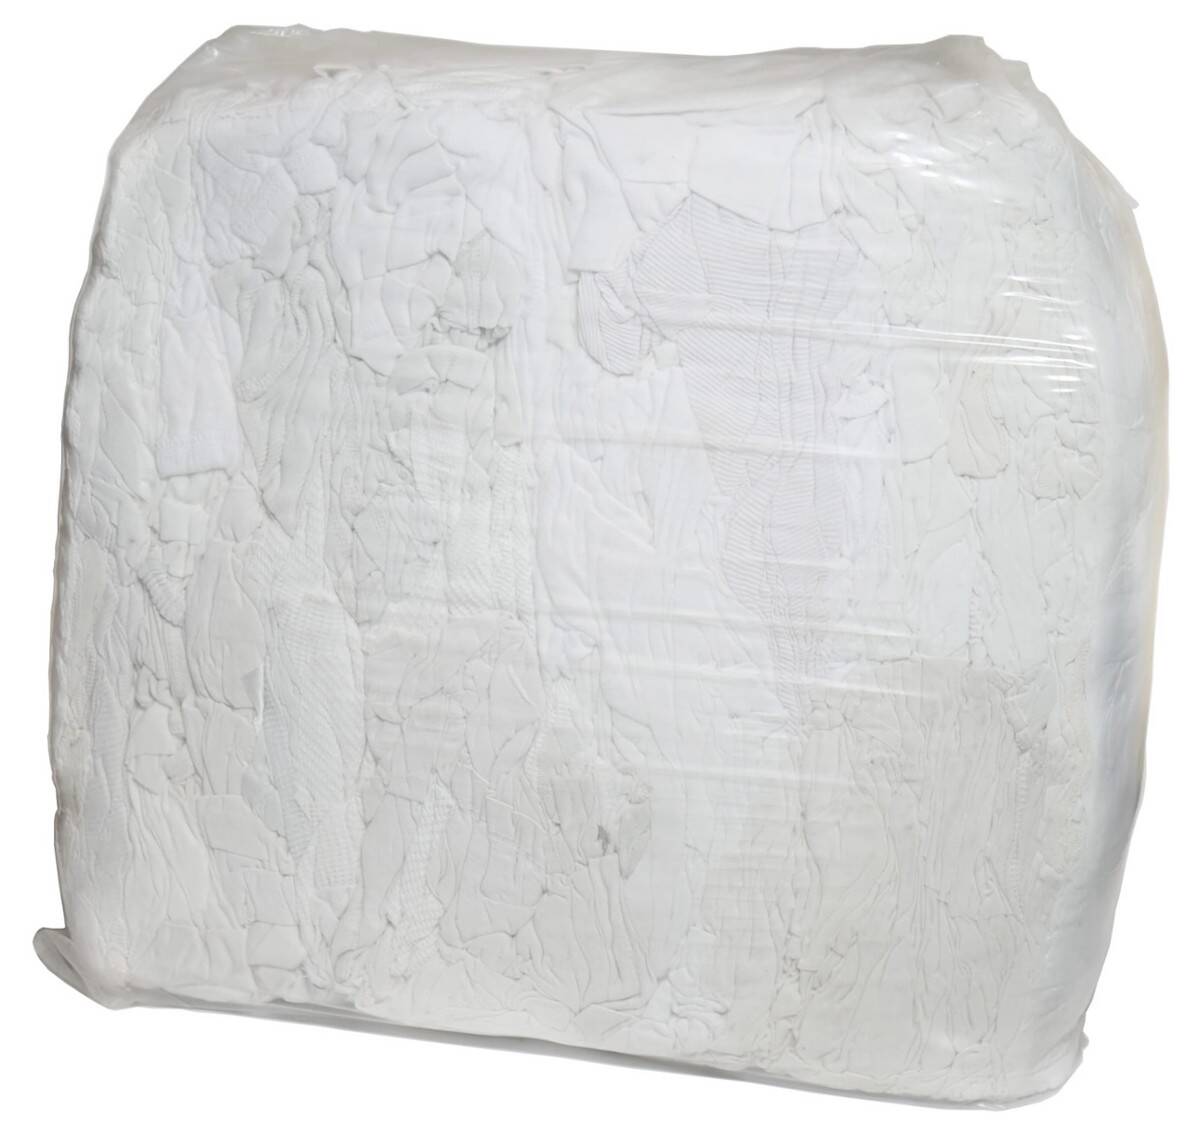 Odzież używana (czyściowo) białe 10kg